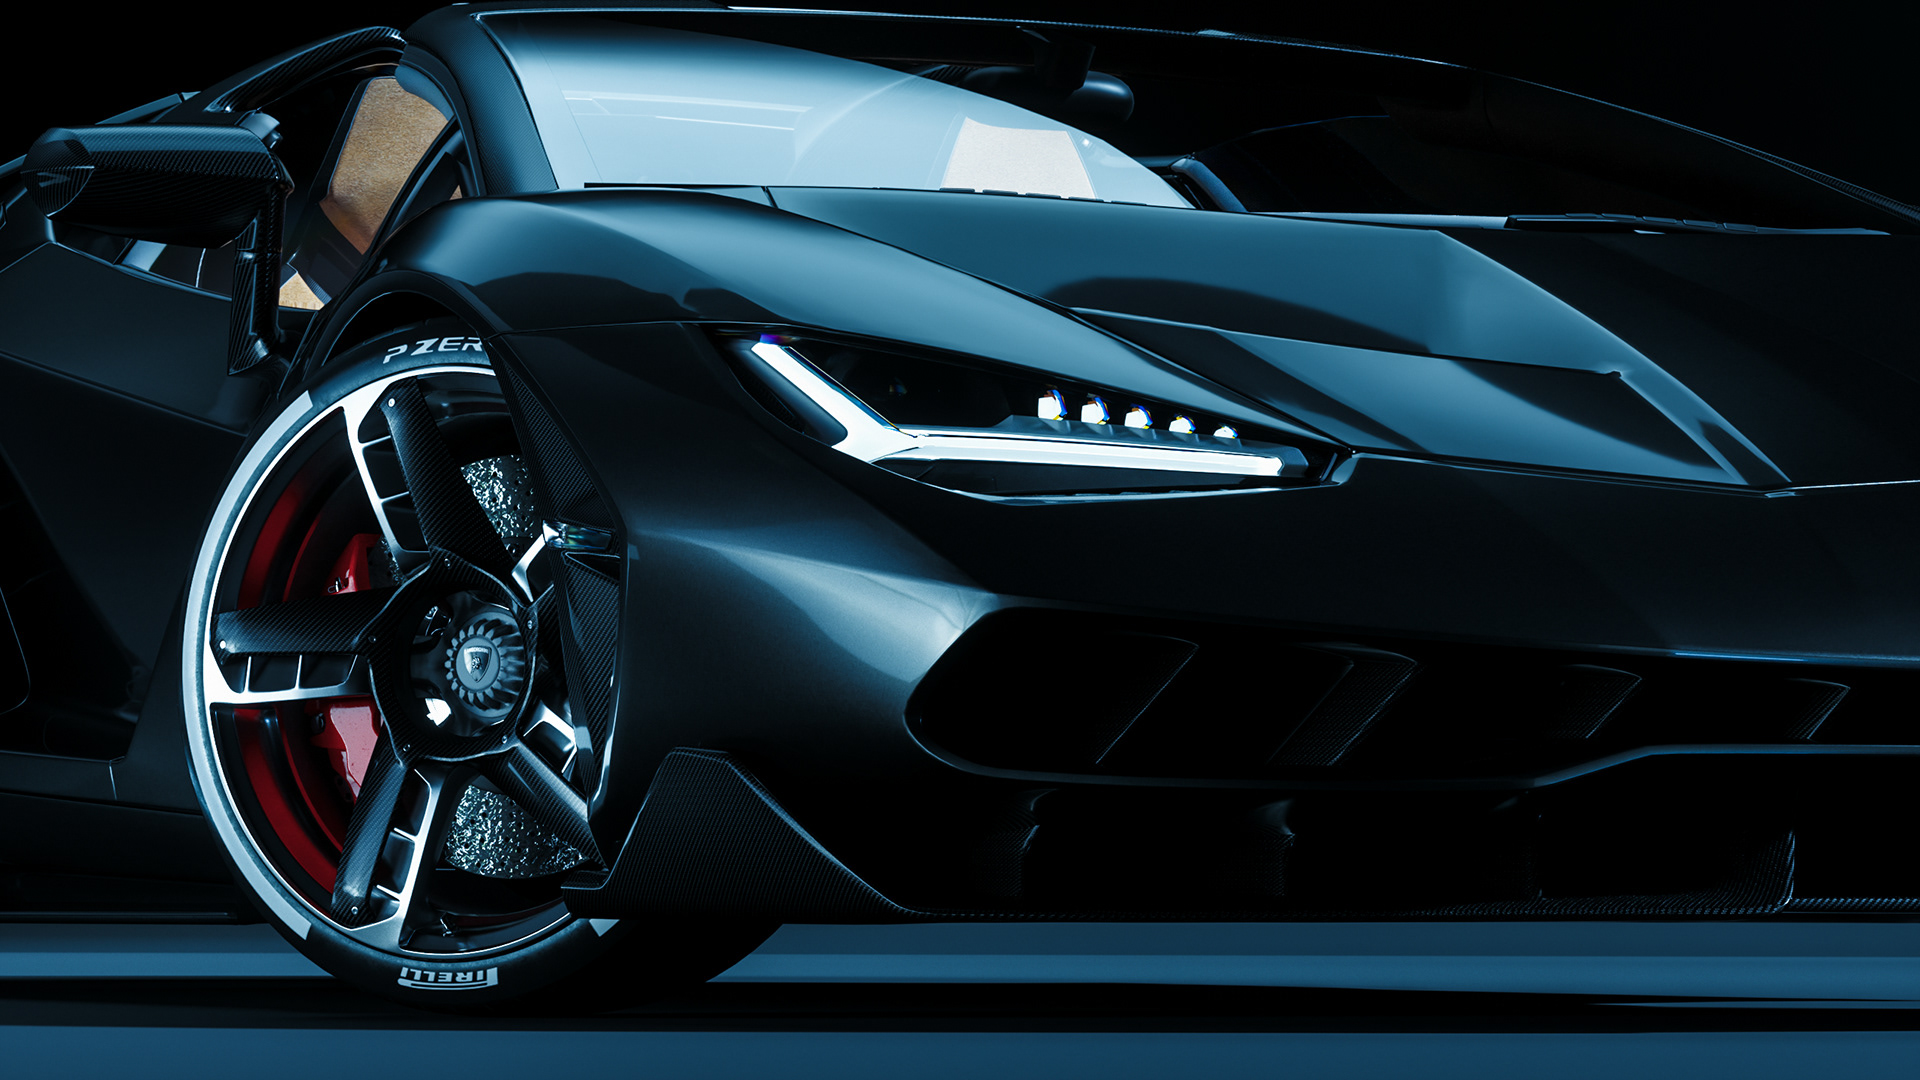 G c lighting. Car material. Car material Cinema 4d. Octane render Lamborghini. Обои на рабочий стол Lamborghini Cyberpunk.